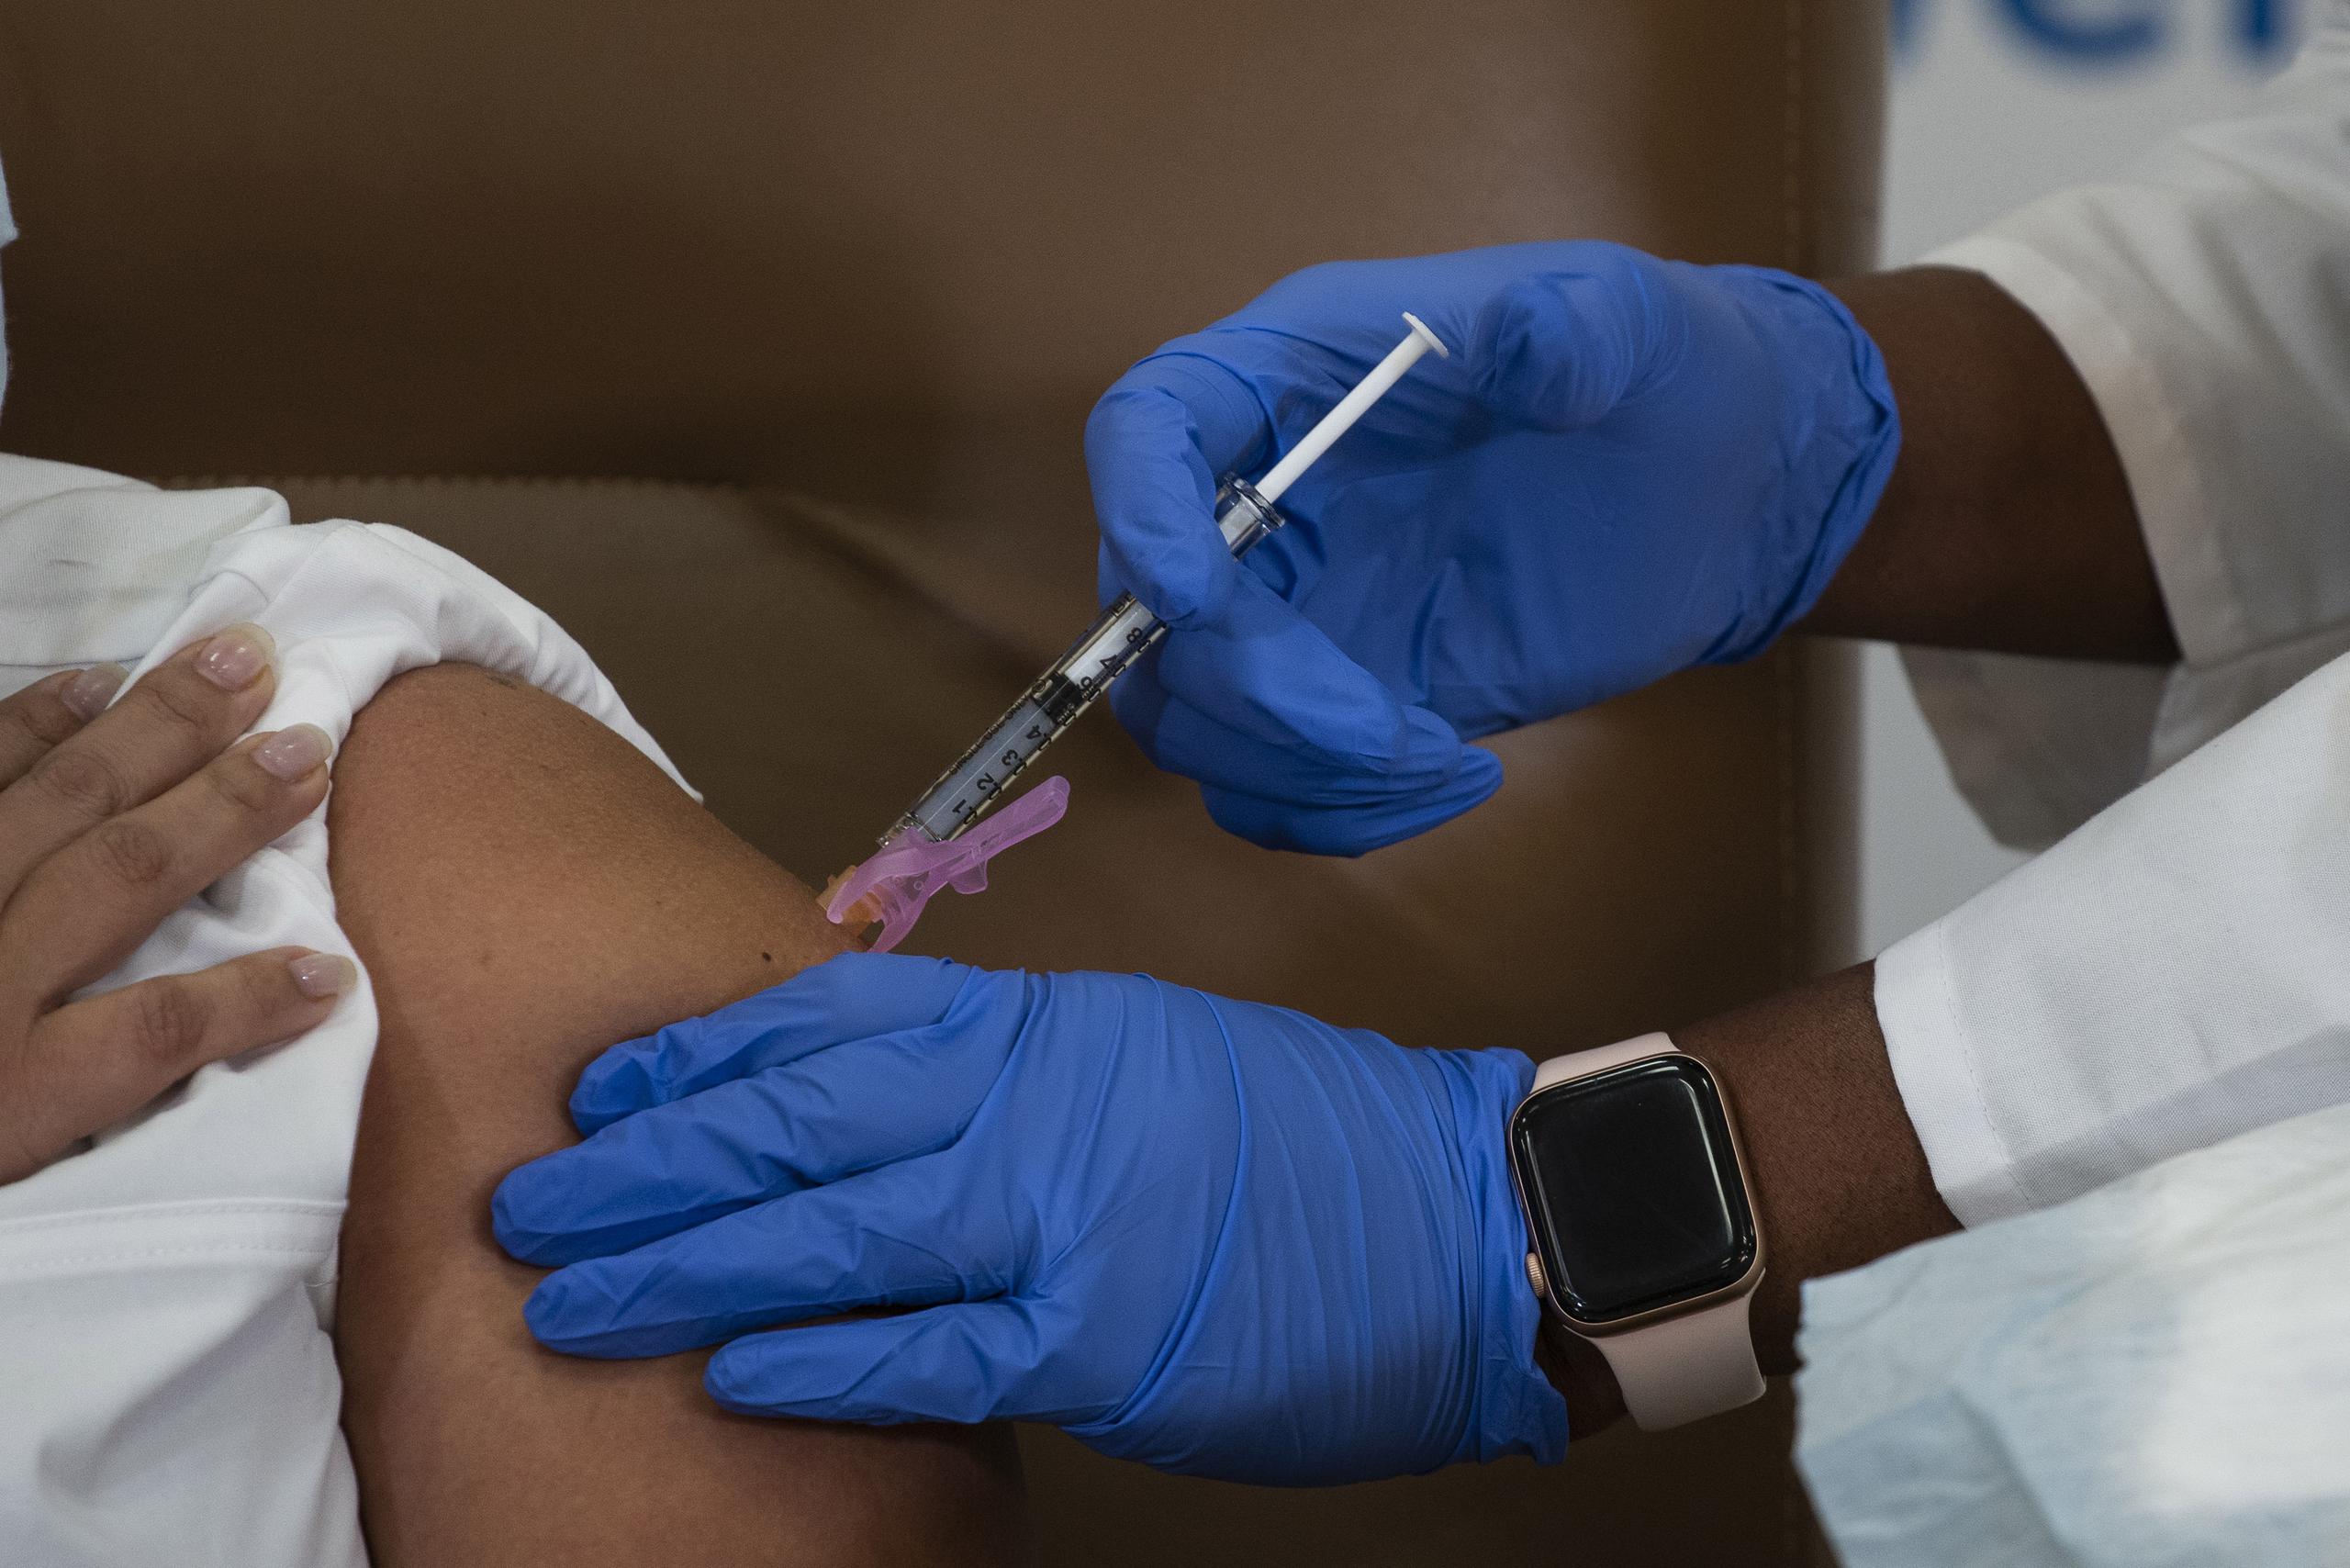 Los científicos estiman que es necesaria una tasa de vacunación de aproximadamente el 70% para que se alcance la inmunidad colectiva.